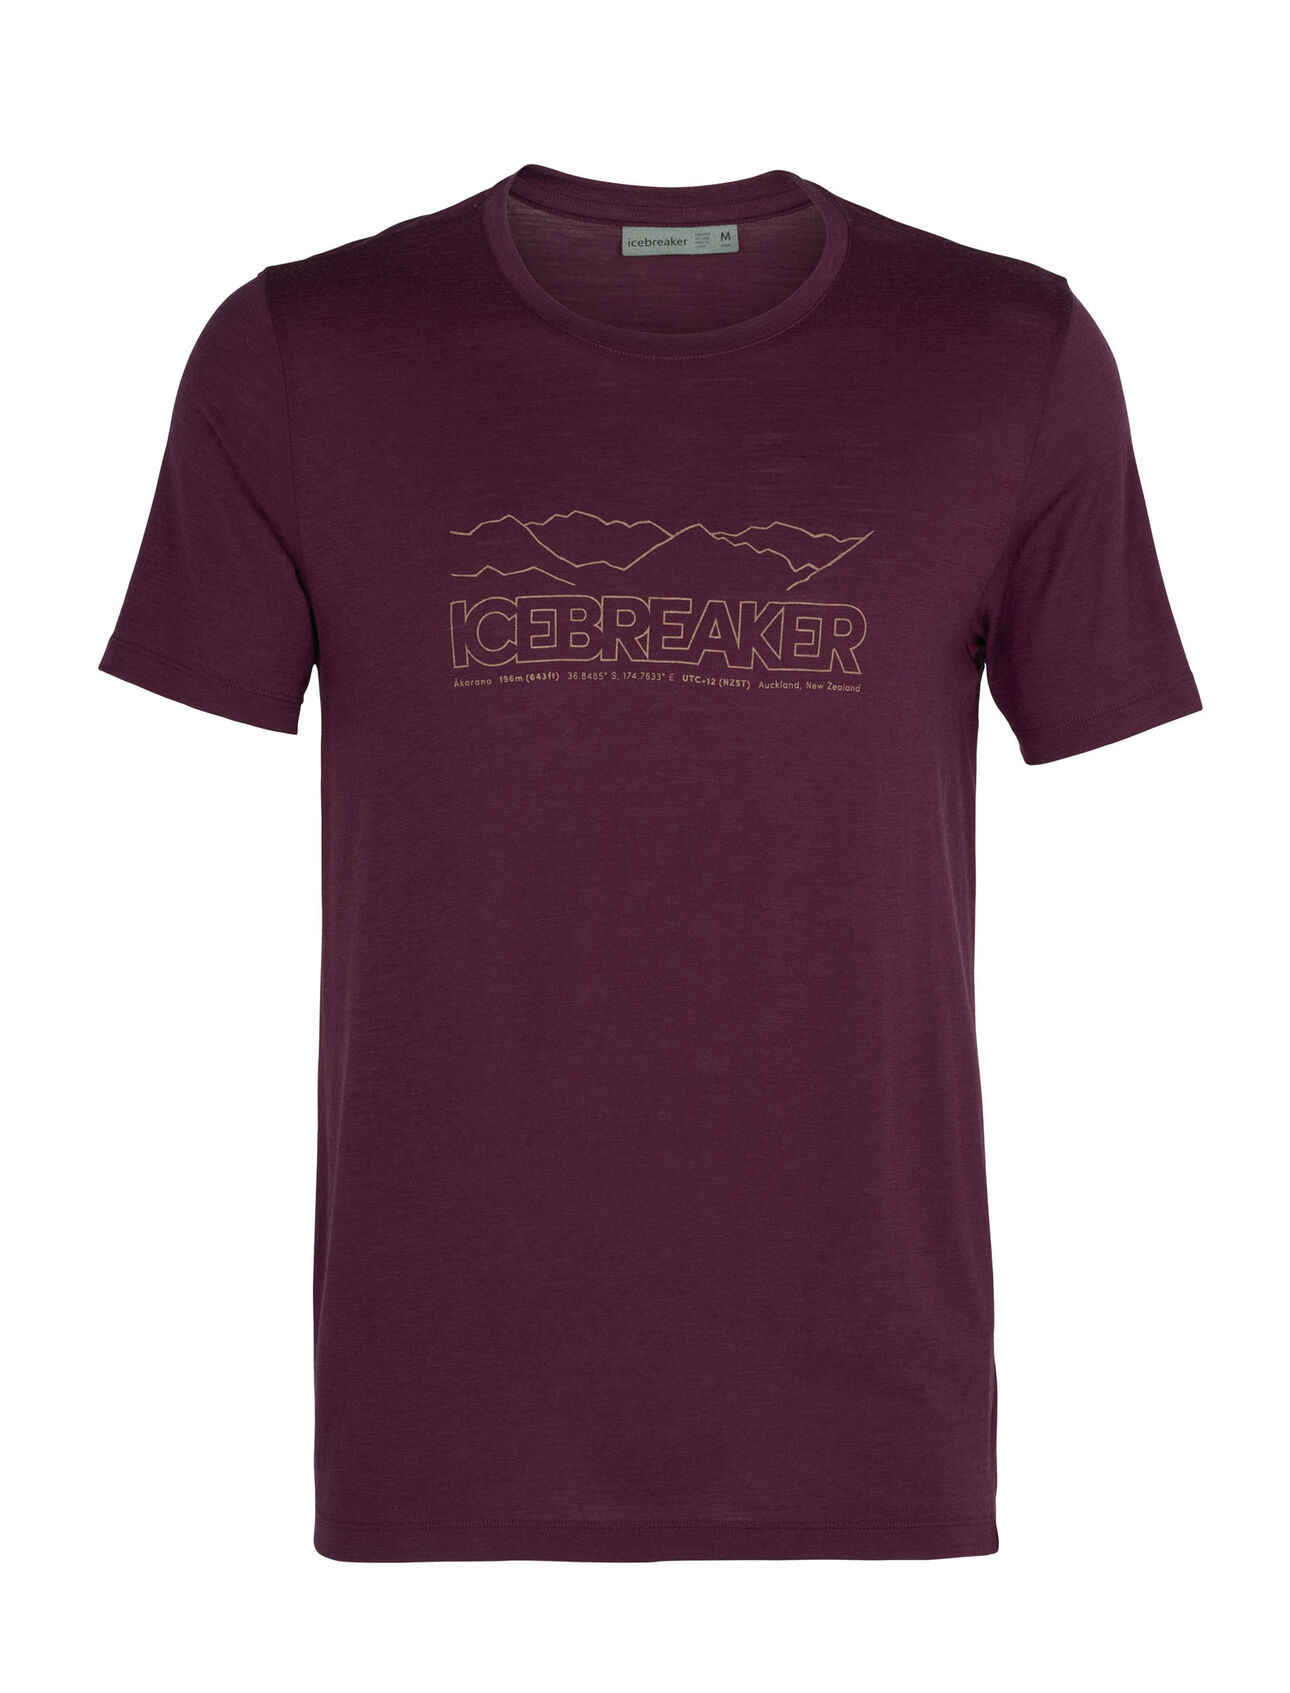 T-shirt in lana merino Tech Lite Short Sleeve Crewe Icebreaker Story